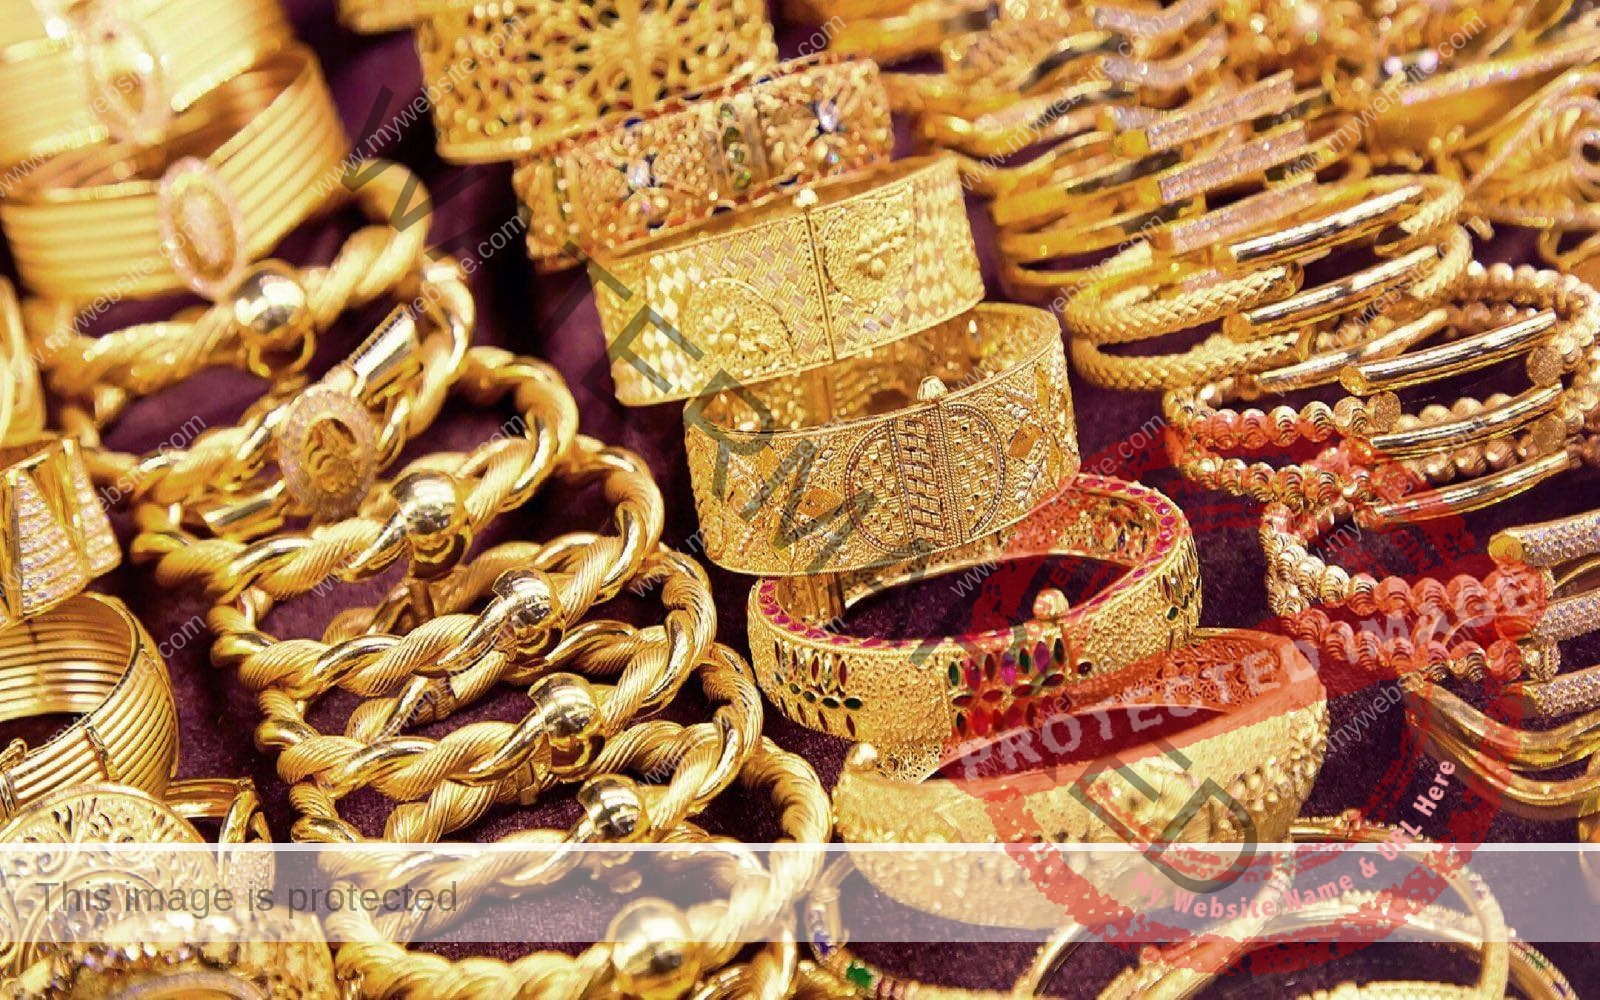 سعر الذهب اليوم في مصر للبيع والشراء داخل الأسواق المحلية